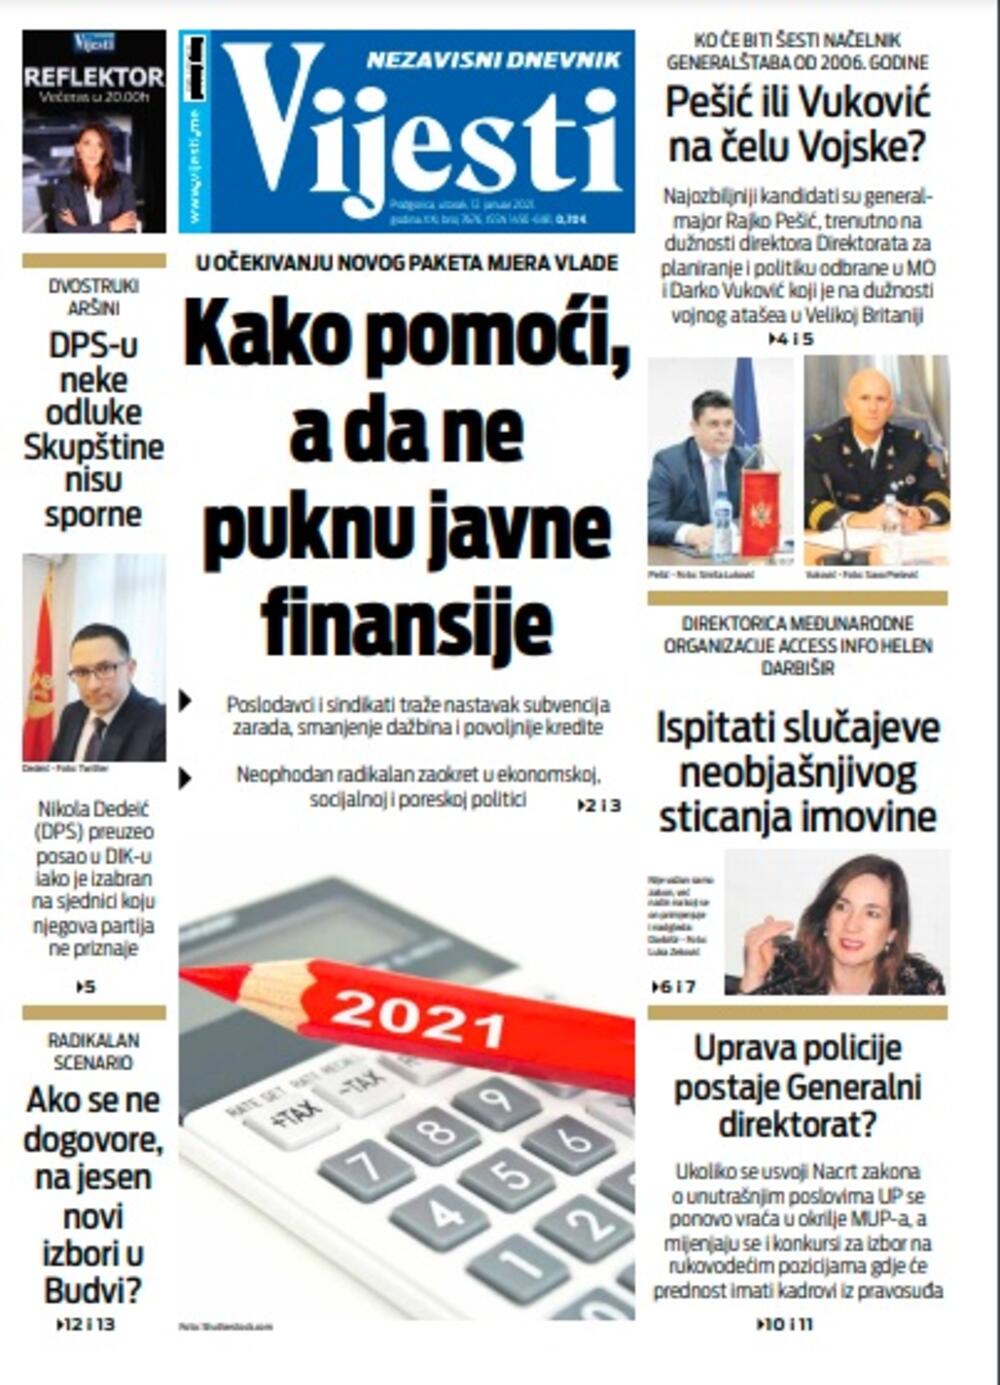 Naslovna strana "Vijesti" za utorak 12. januar 2021. godine, Foto: Vijesti